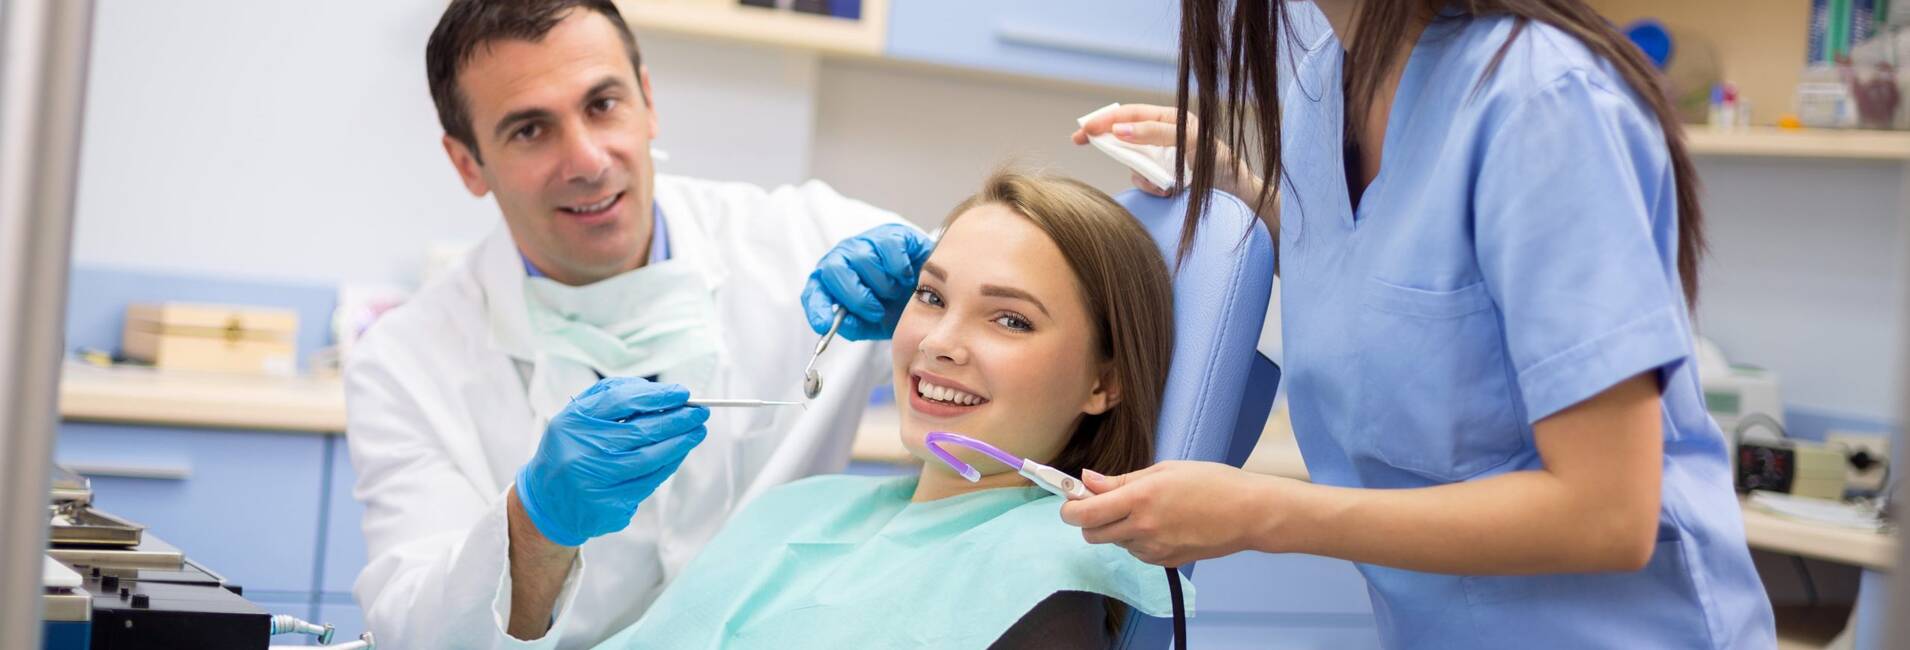 Мы рады приветствовать Вас на сайте стоматологии Dental Practica! г. Нижний Новгород